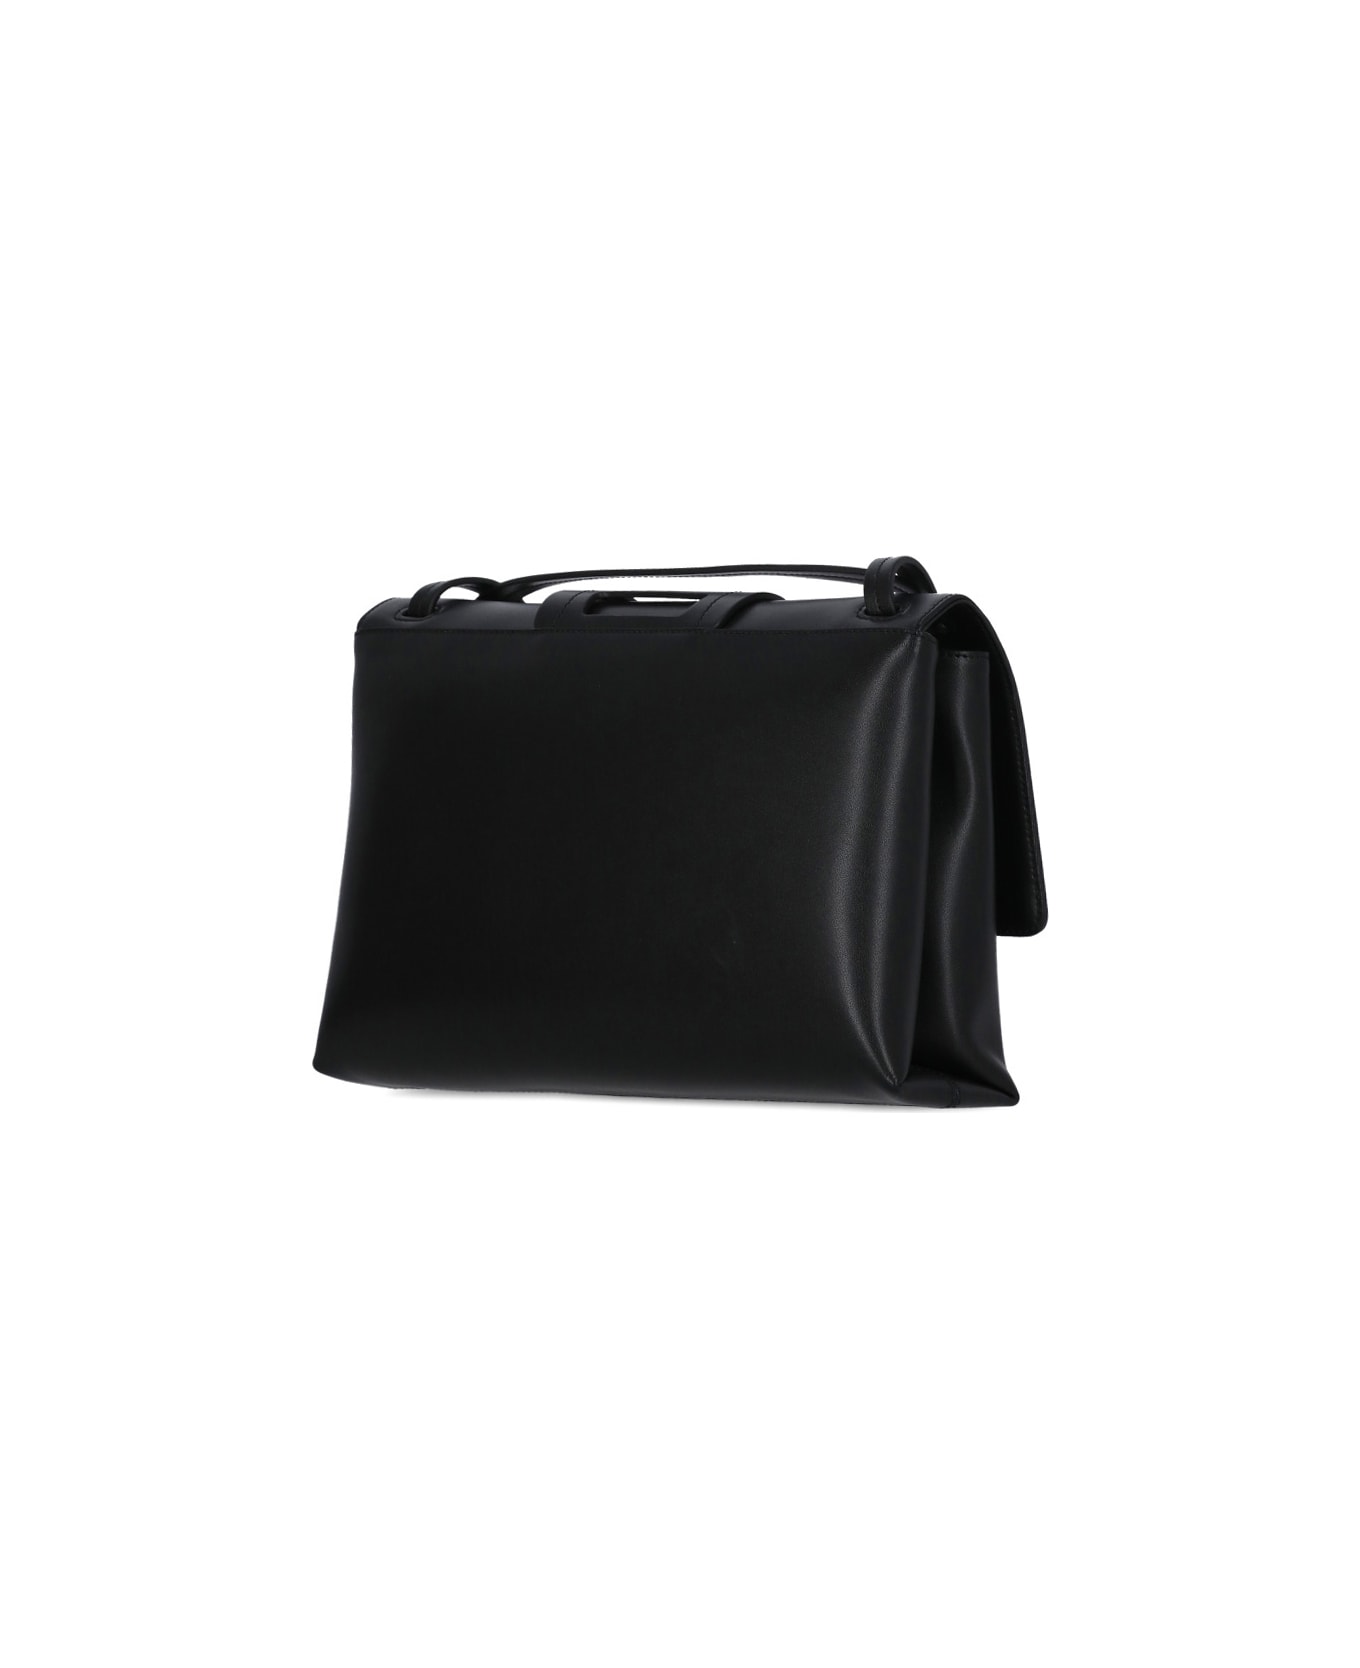 Hogan H-bag Shoulder Bag - Black ショルダーバッグ